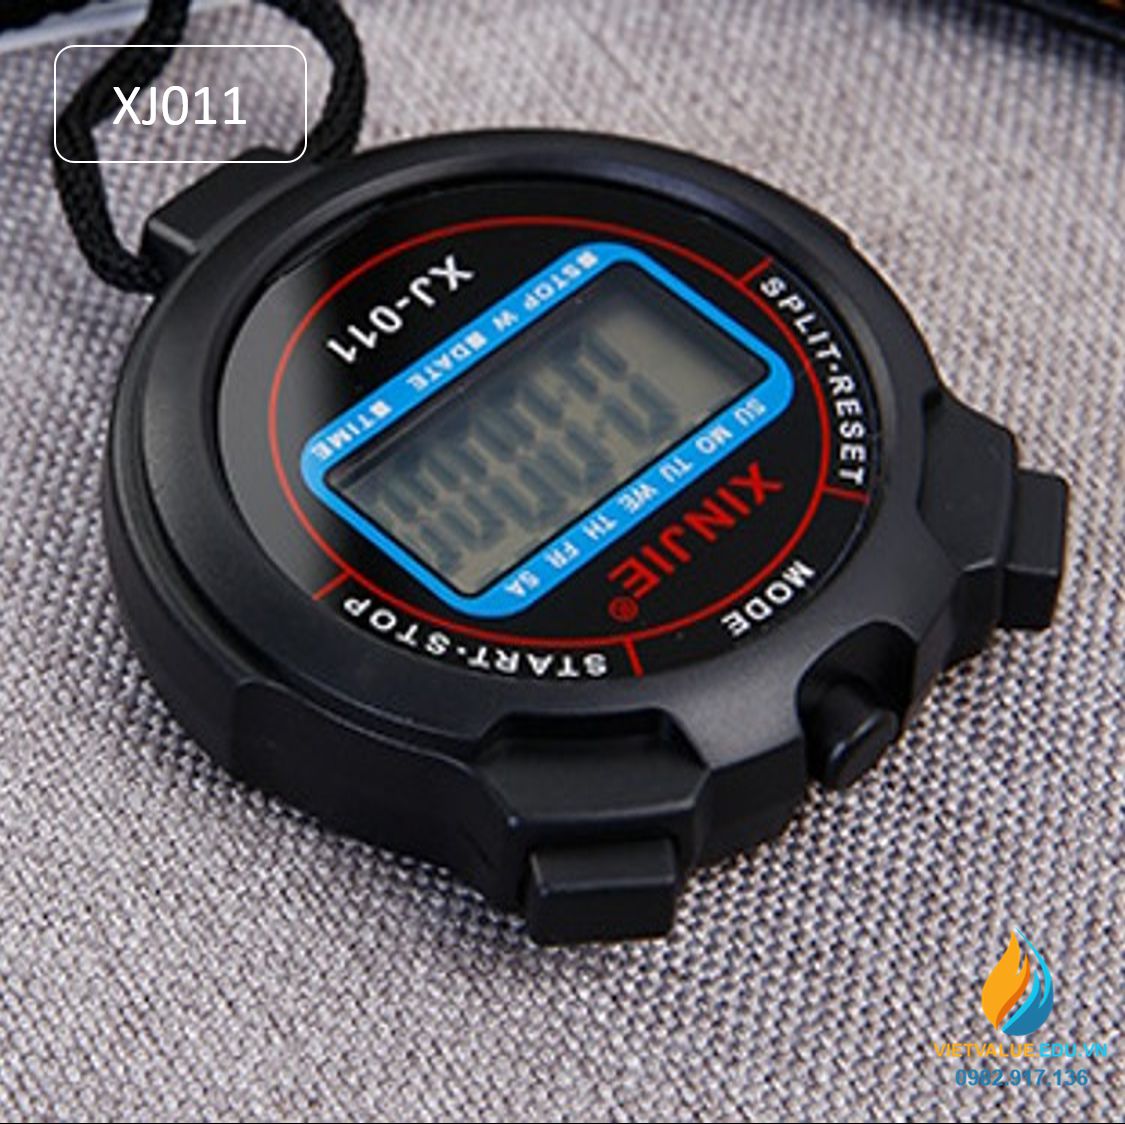 Đồng hồ bấm giờ thể dục XJ011, đo thời gian chính xác 1/100 giây, sử dụng pin cúc áo